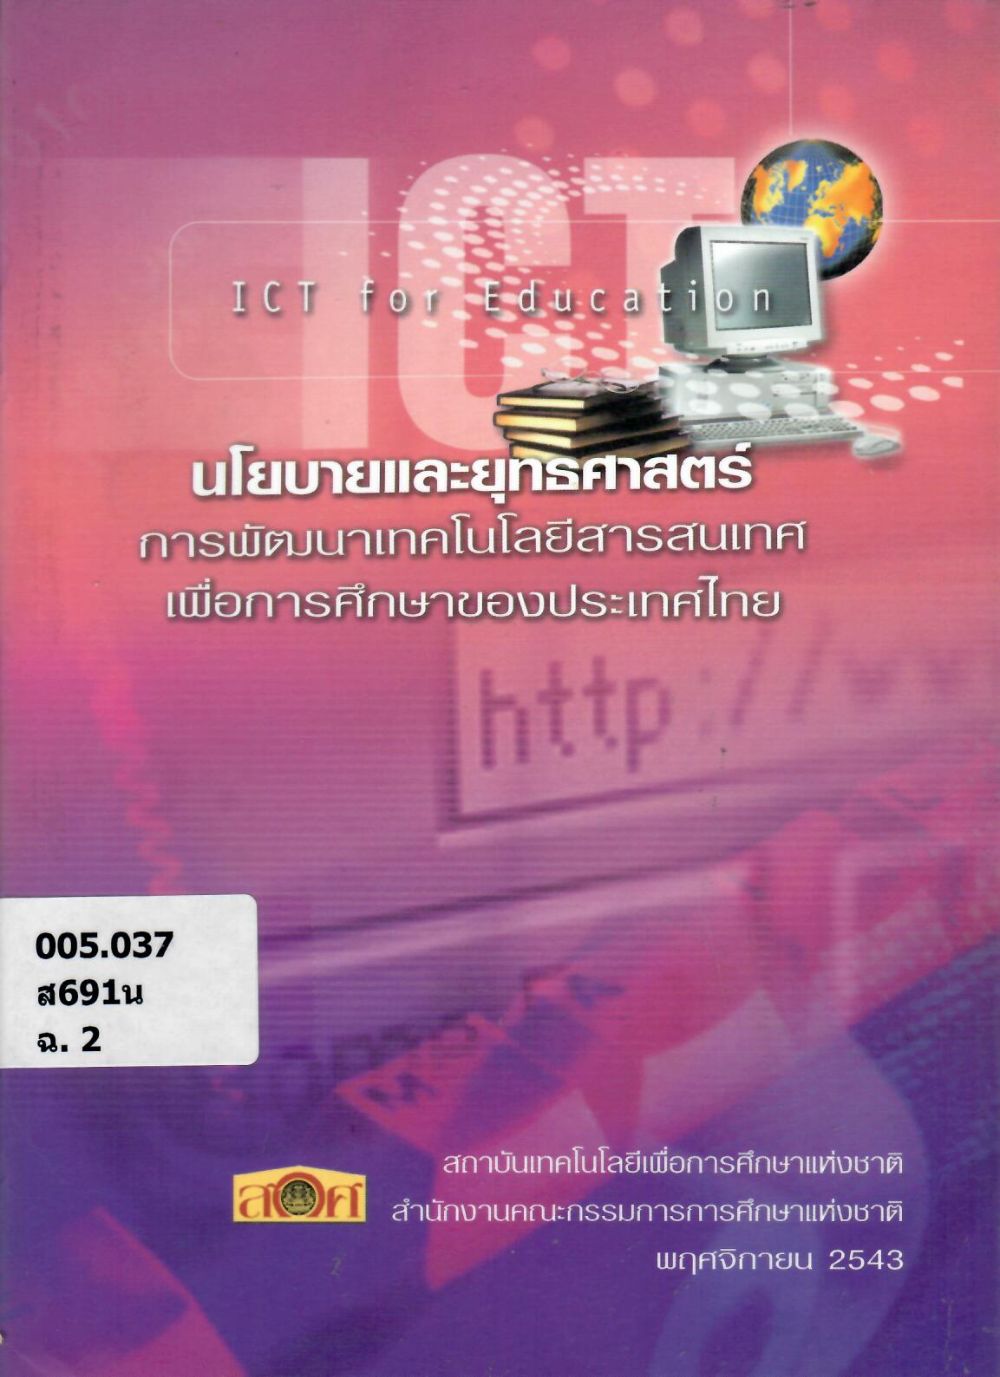 นโยบายและยุทธศาสตร์การพัฒนาเทคโนโลยีสารสนเทศเพื่อการศึกษาของประเทศไทย/ สำนักงานคณะกรรมการการศึกษาแห่งชาติ